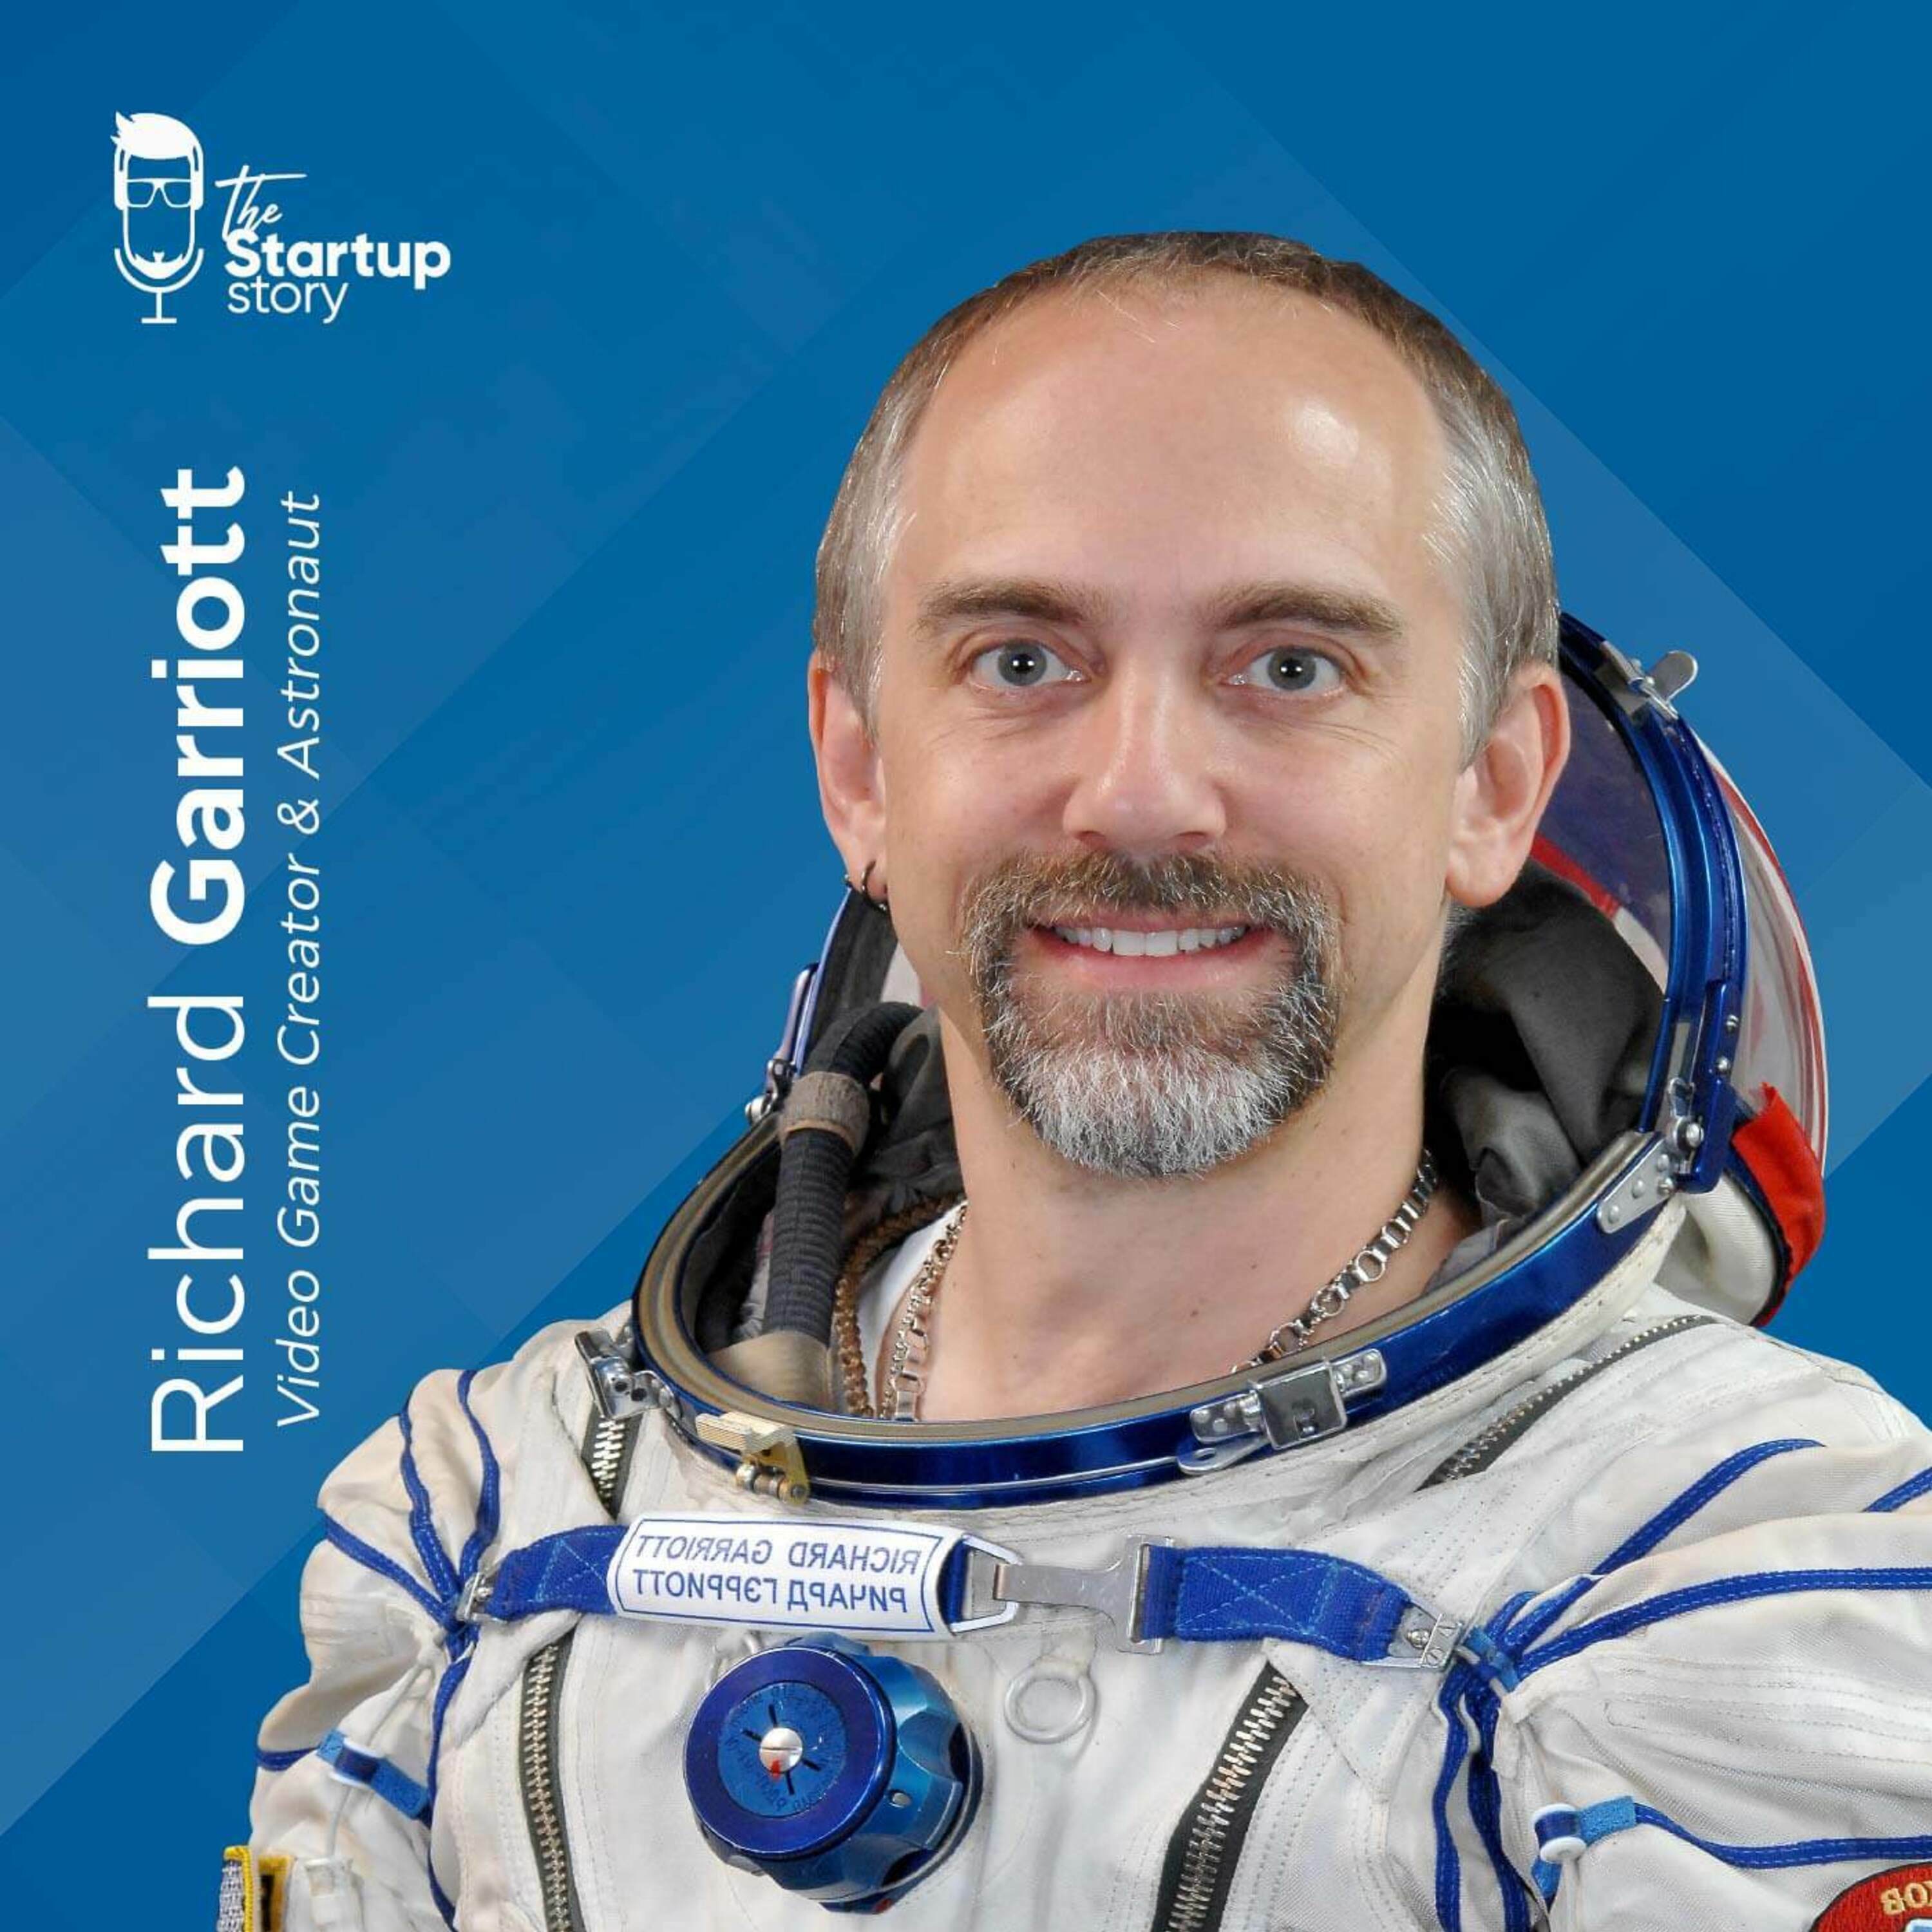 TOP EPISODE: Richard Garriott, Video Game Creator and Astronaut